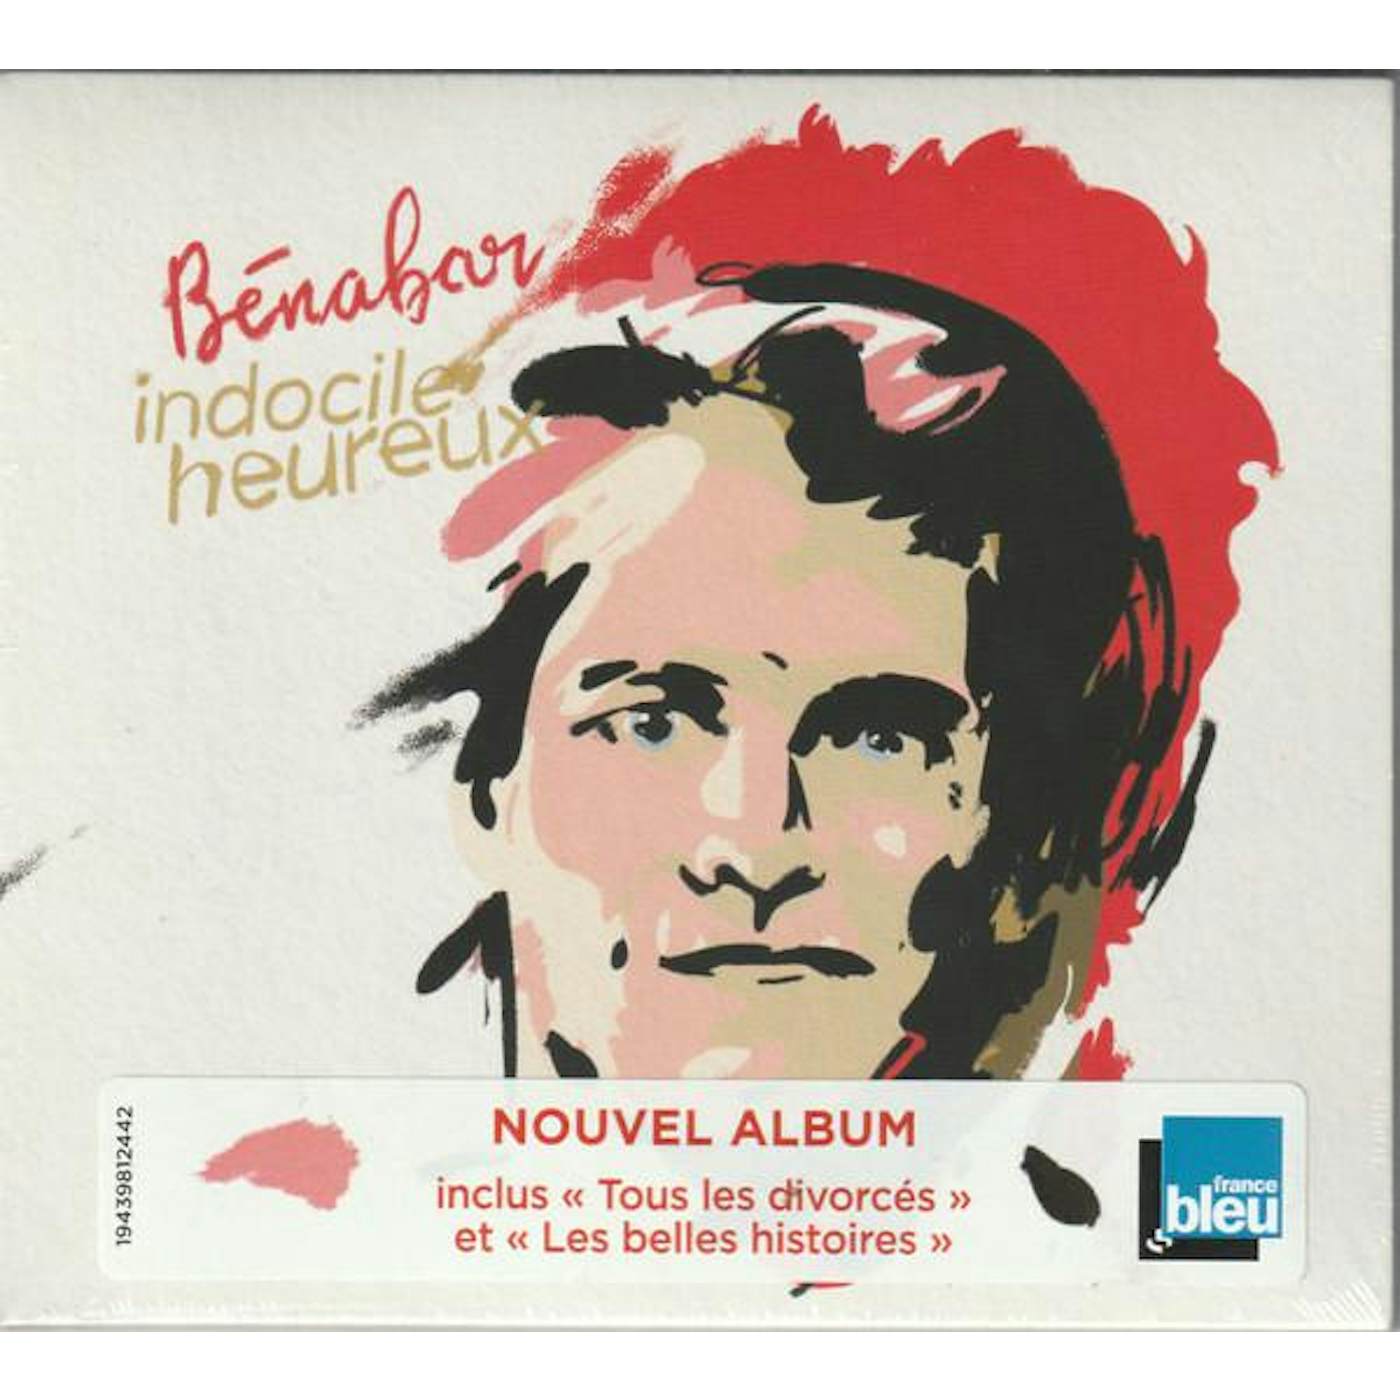 Bénabar INDOCILE HEUREUX CD